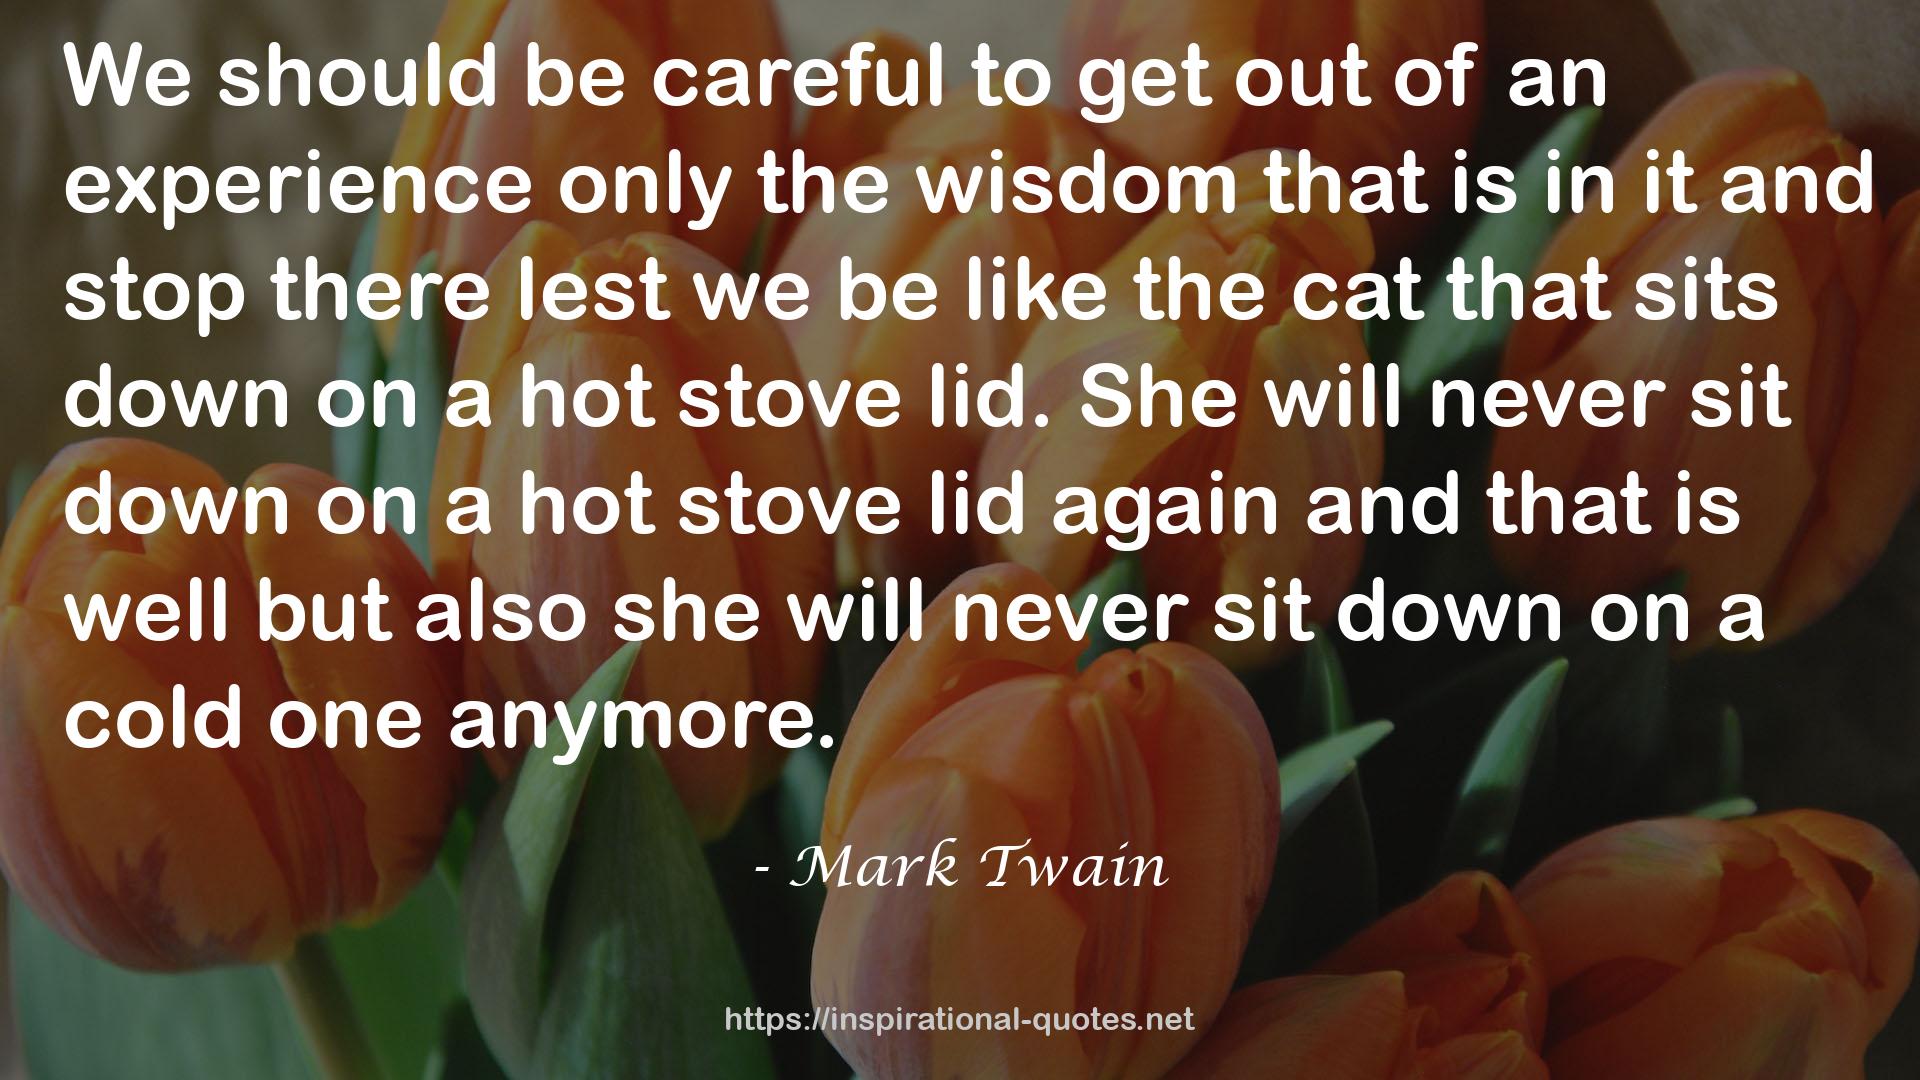 Mark Twain QUOTES